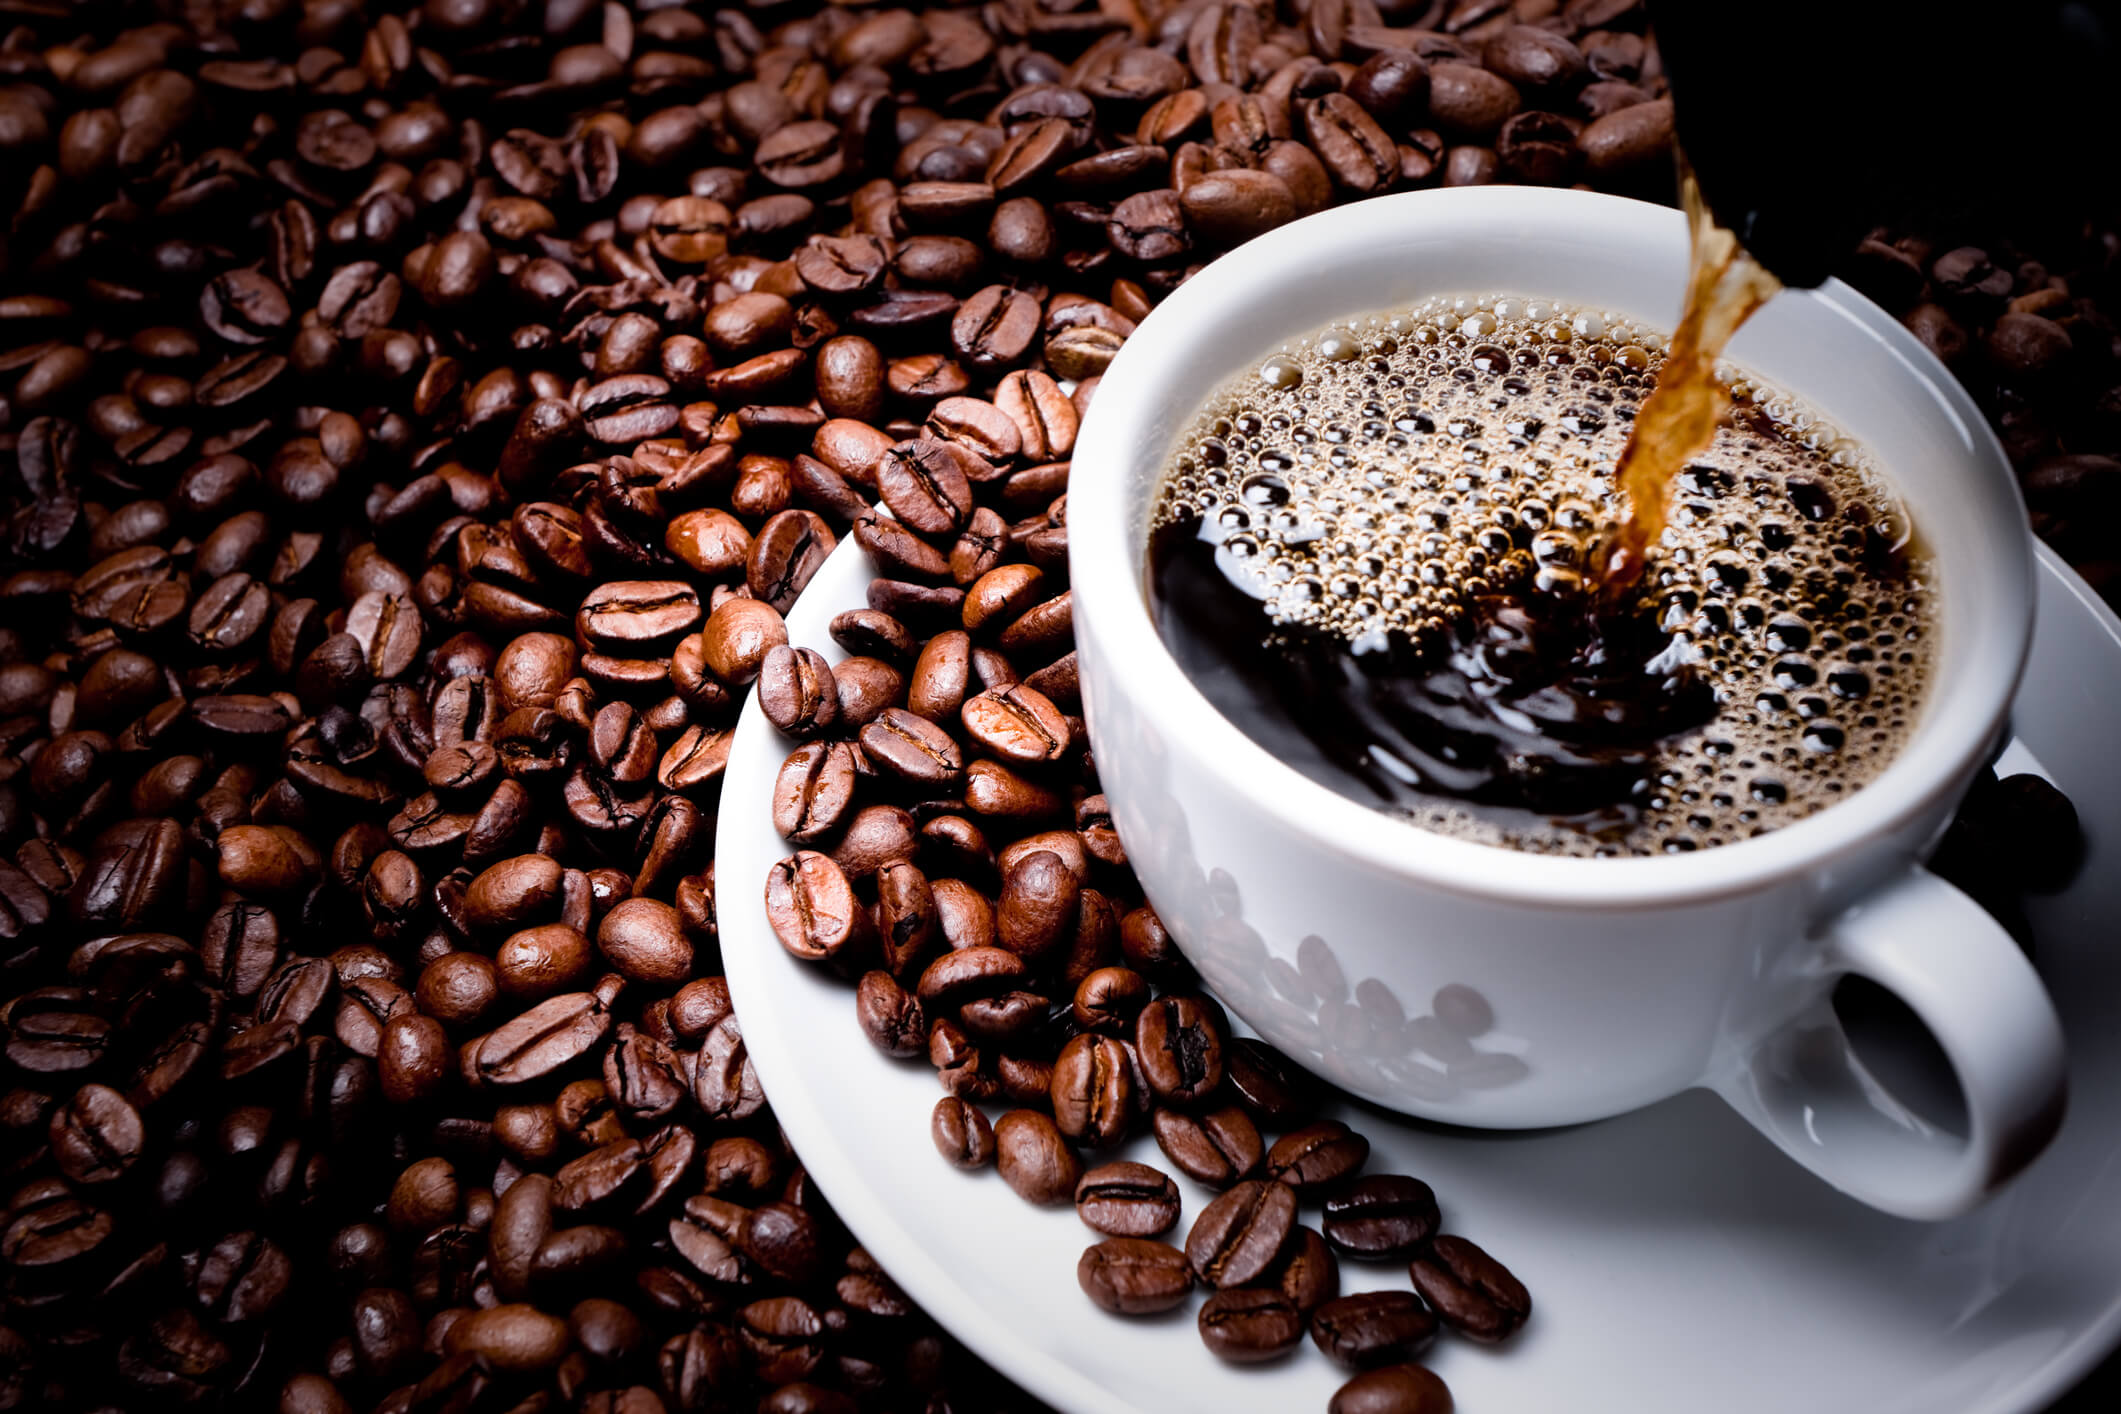 Cafeína: tudo que você precisa saber sobre o composto bioativo mais consumido no mundo